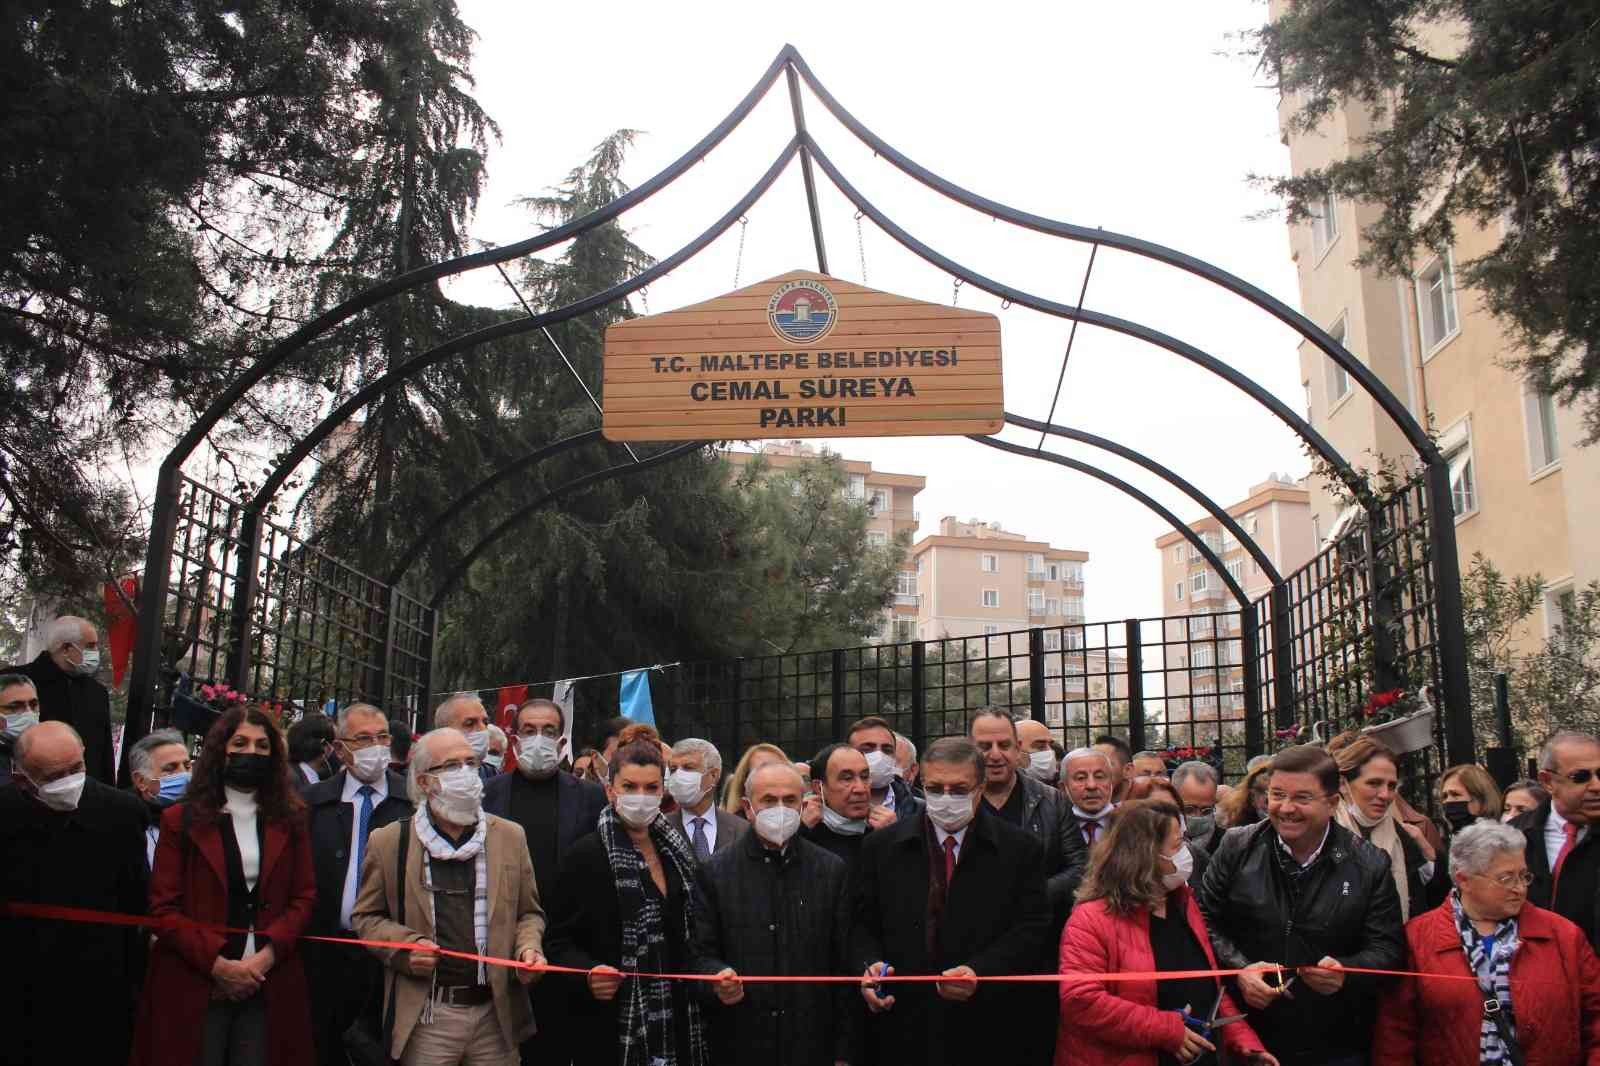 Usta şair Cemal Süreya’nın ismi Maltepe’de yaşatıldı #istanbul